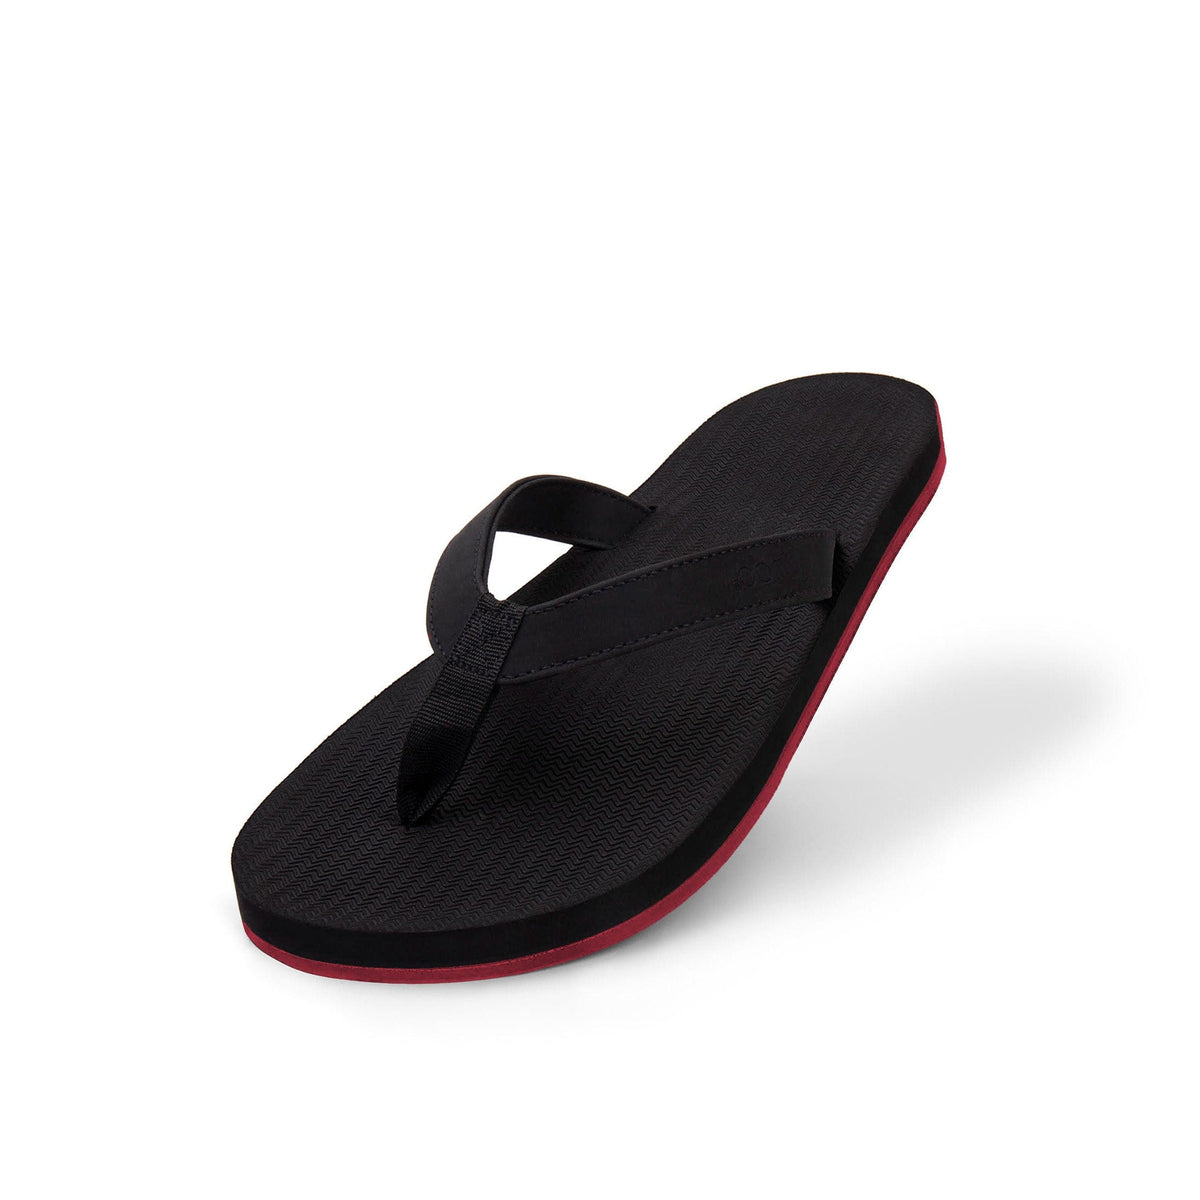 Women's Flip Flops Sneaker Sole - Black/Red Sole - Indosole